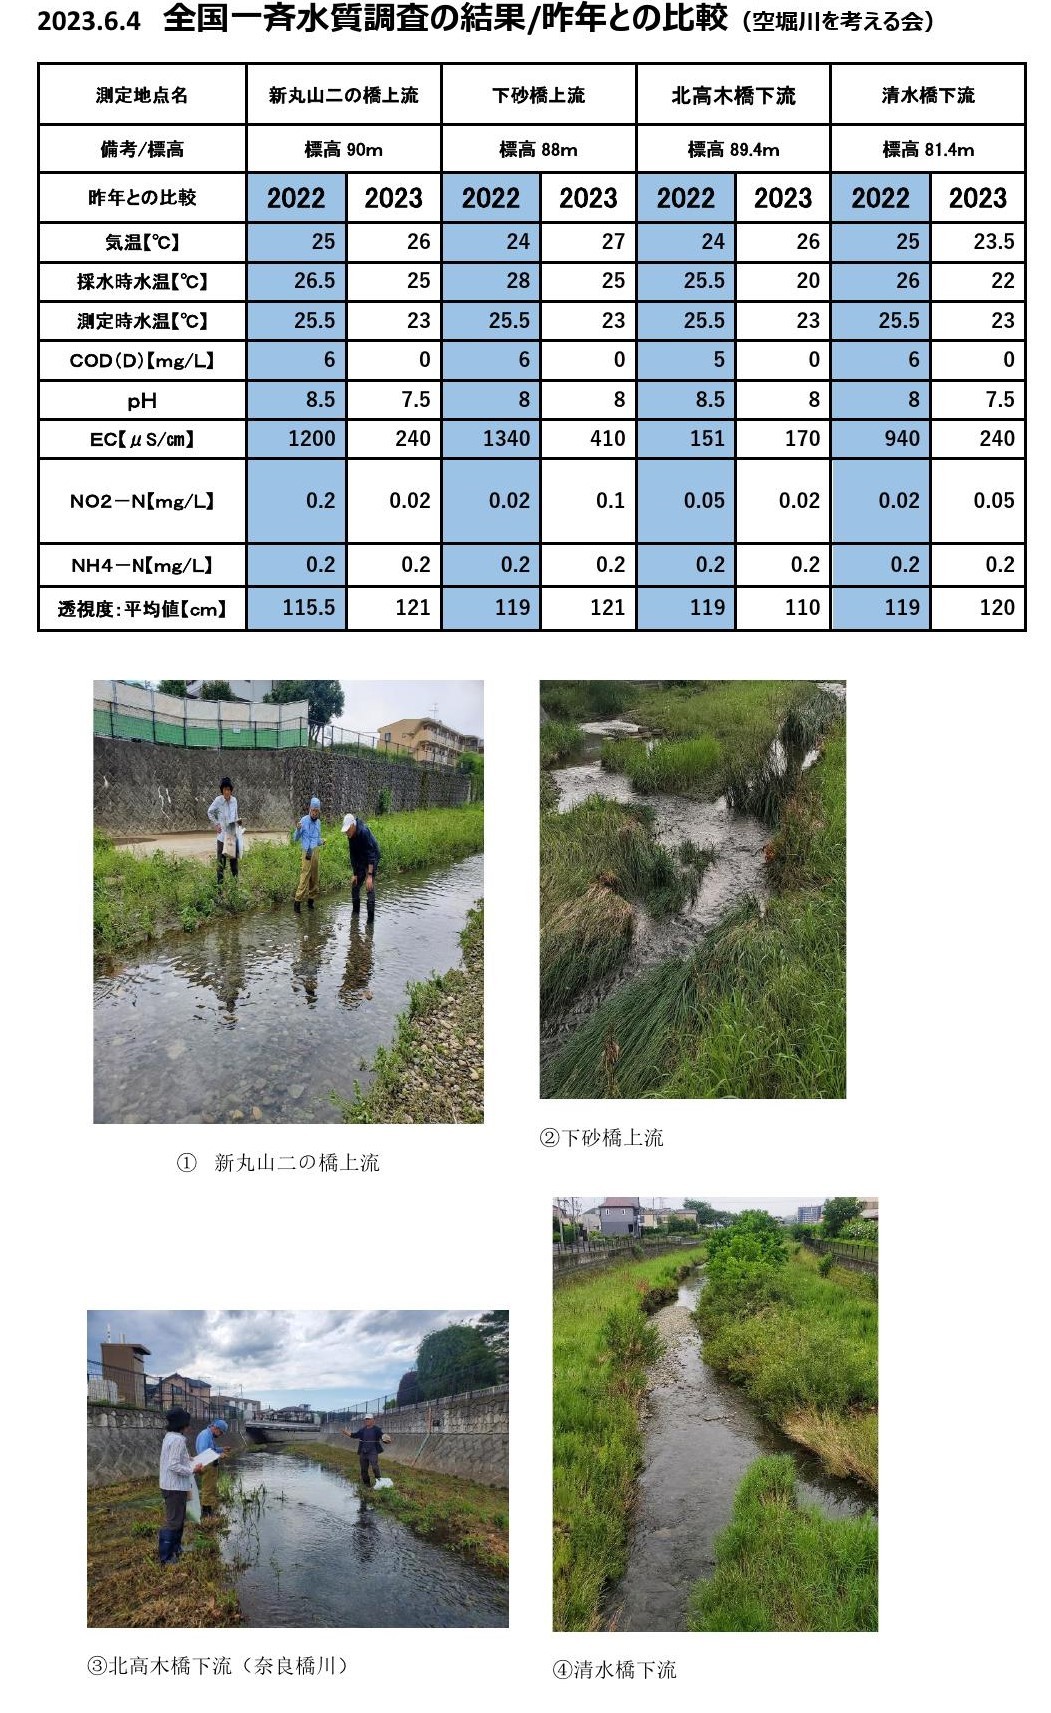 20230604水質調査結果主要データ2年比較_000001 (2)